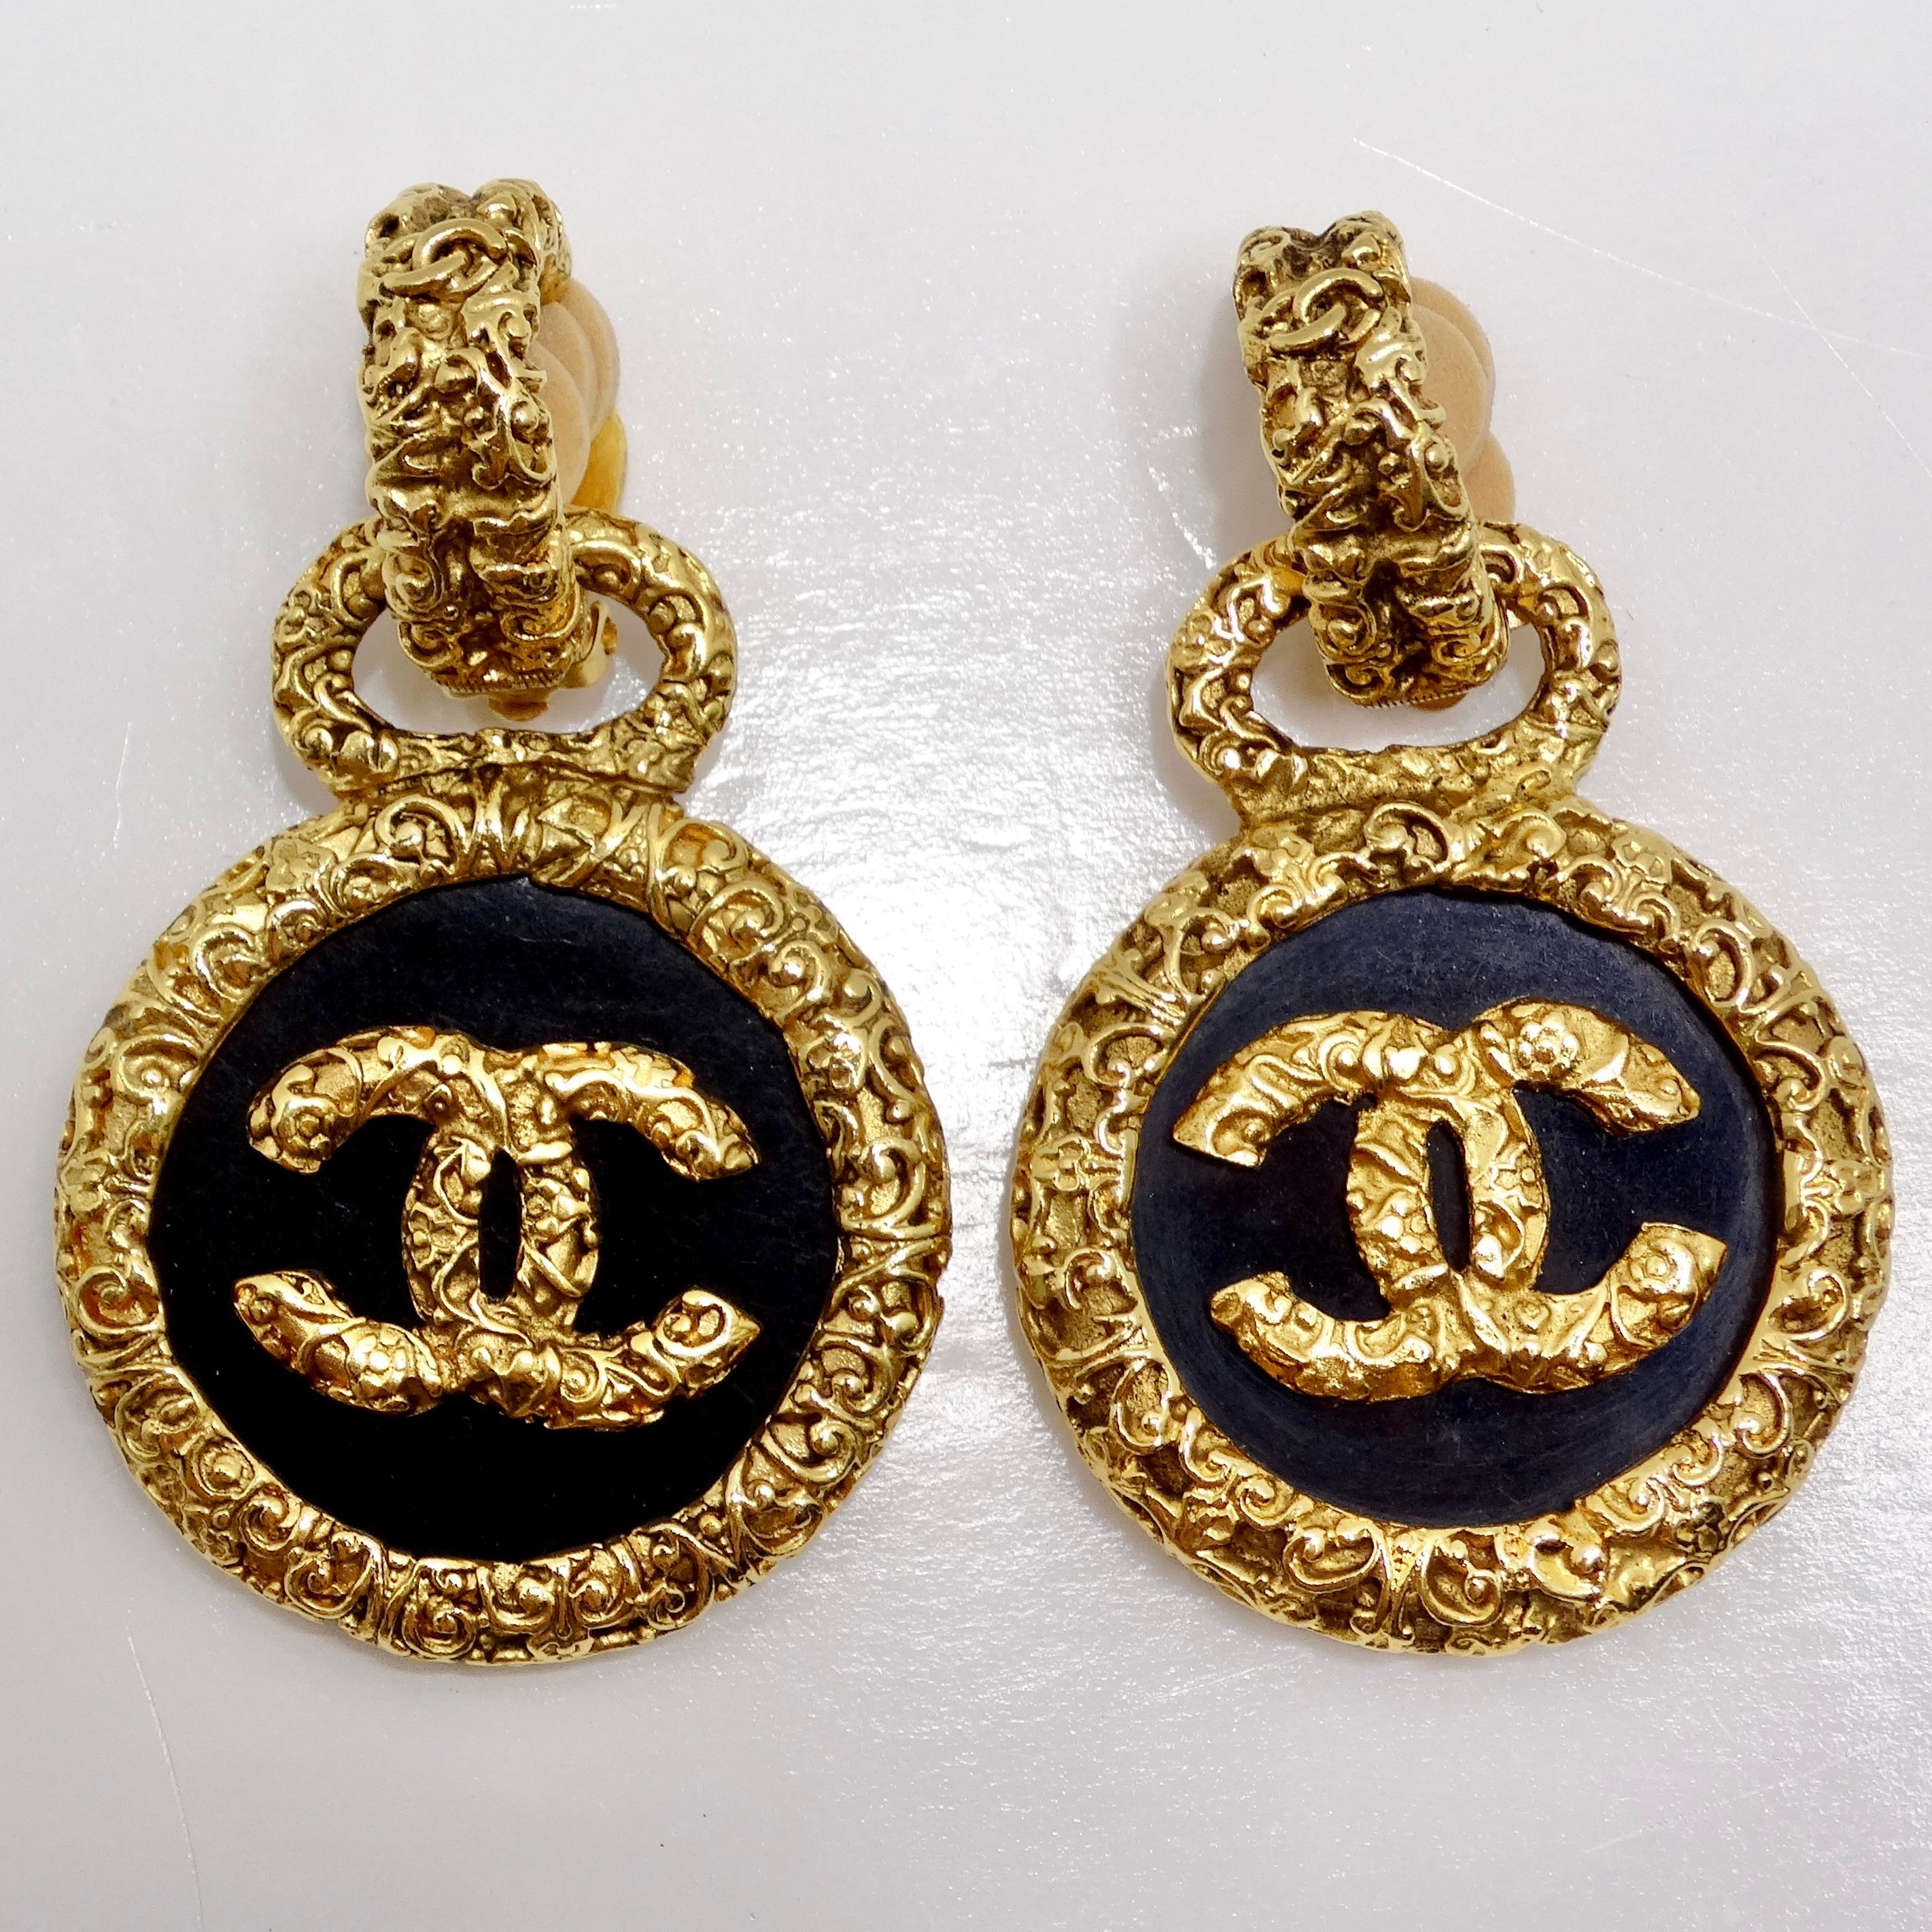 Wir stellen die exquisiten Chanel 1993 Gold Tone Black CC Medallion Florentine Ohrringe vor, ein umwerfendes Paar, das zeitlose Eleganz und Raffinesse ausstrahlt. Diese mit viel Liebe zum Detail gefertigten Ohrringe werten mit ihrem einzigartigen